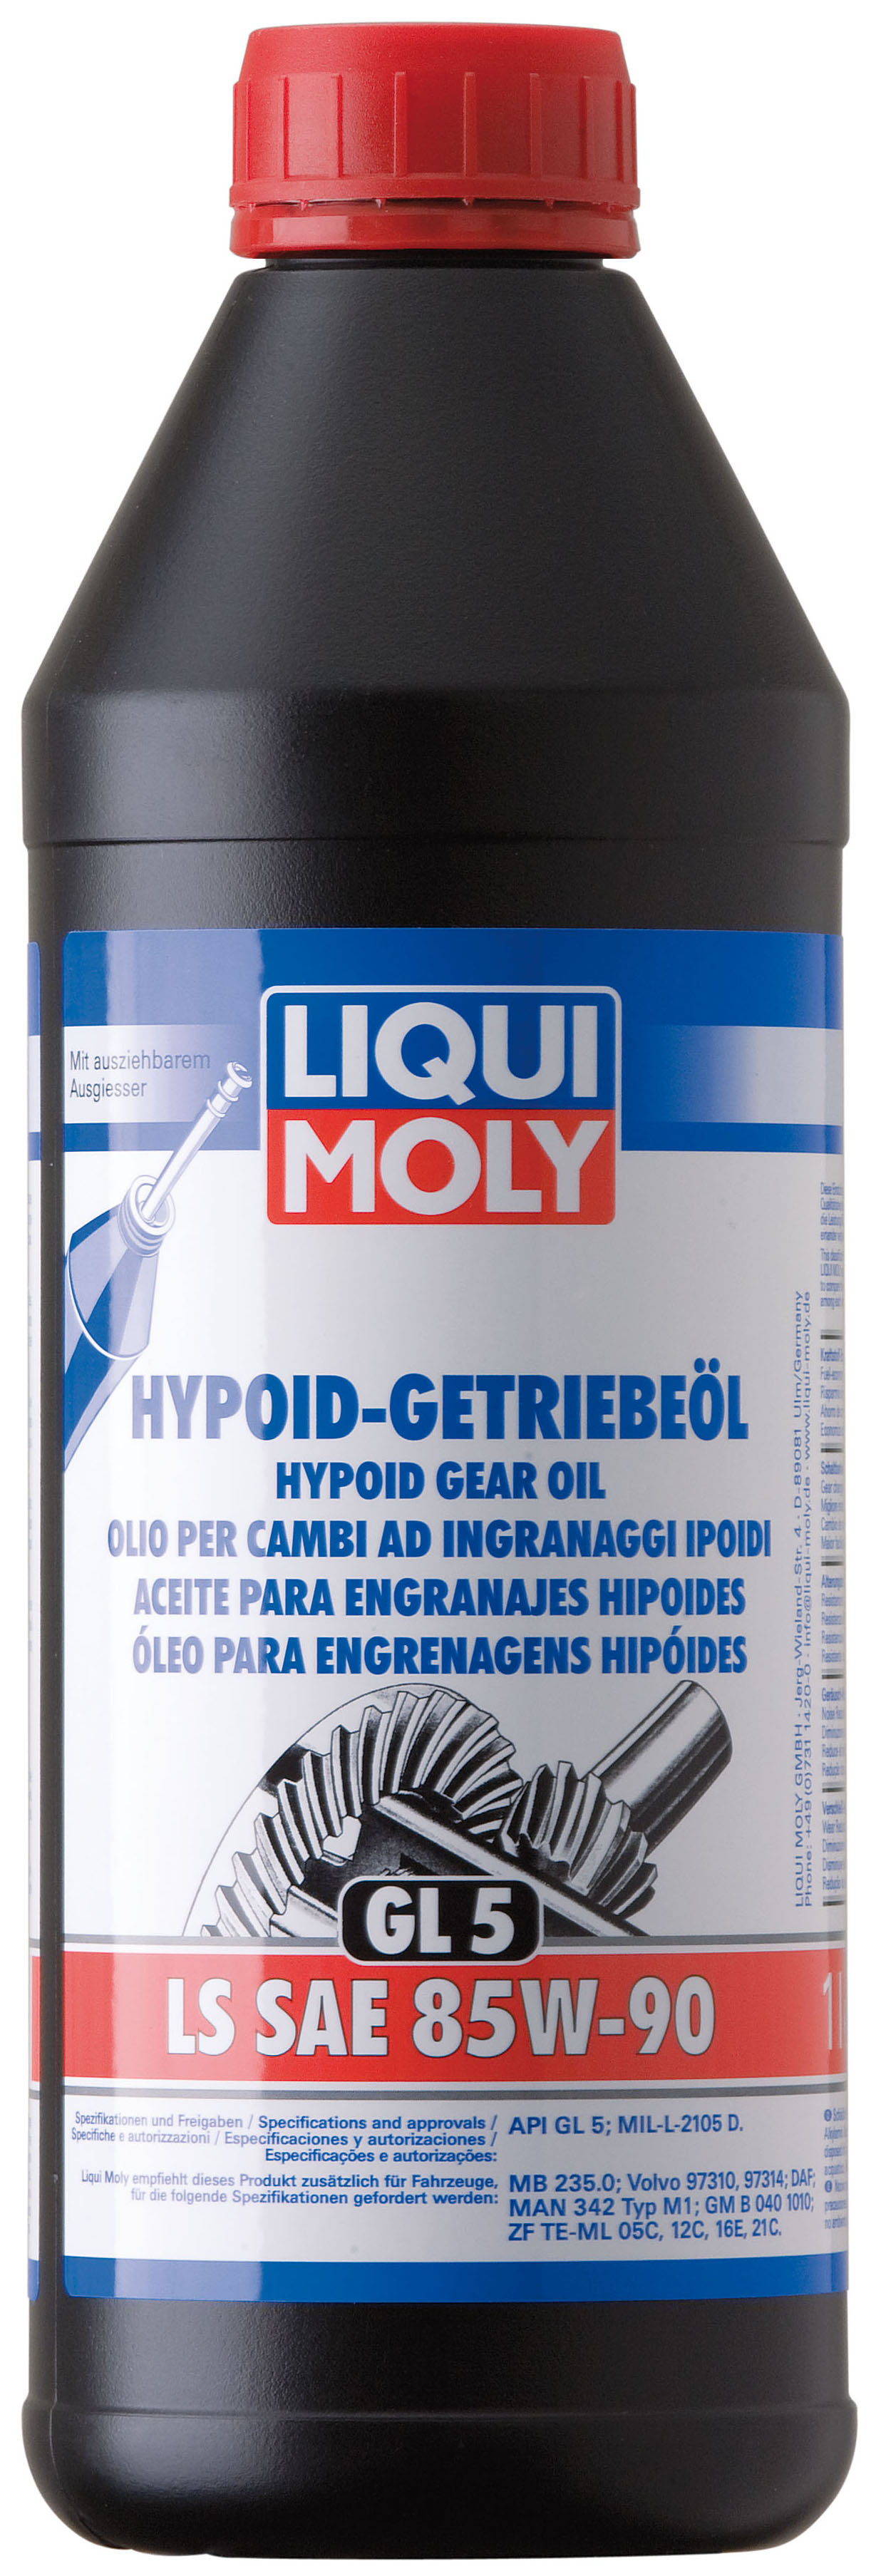 Минеральное трансмиссионное масло Liqui Moly Hypoid-Getriebeoil LS 85W-90 1л